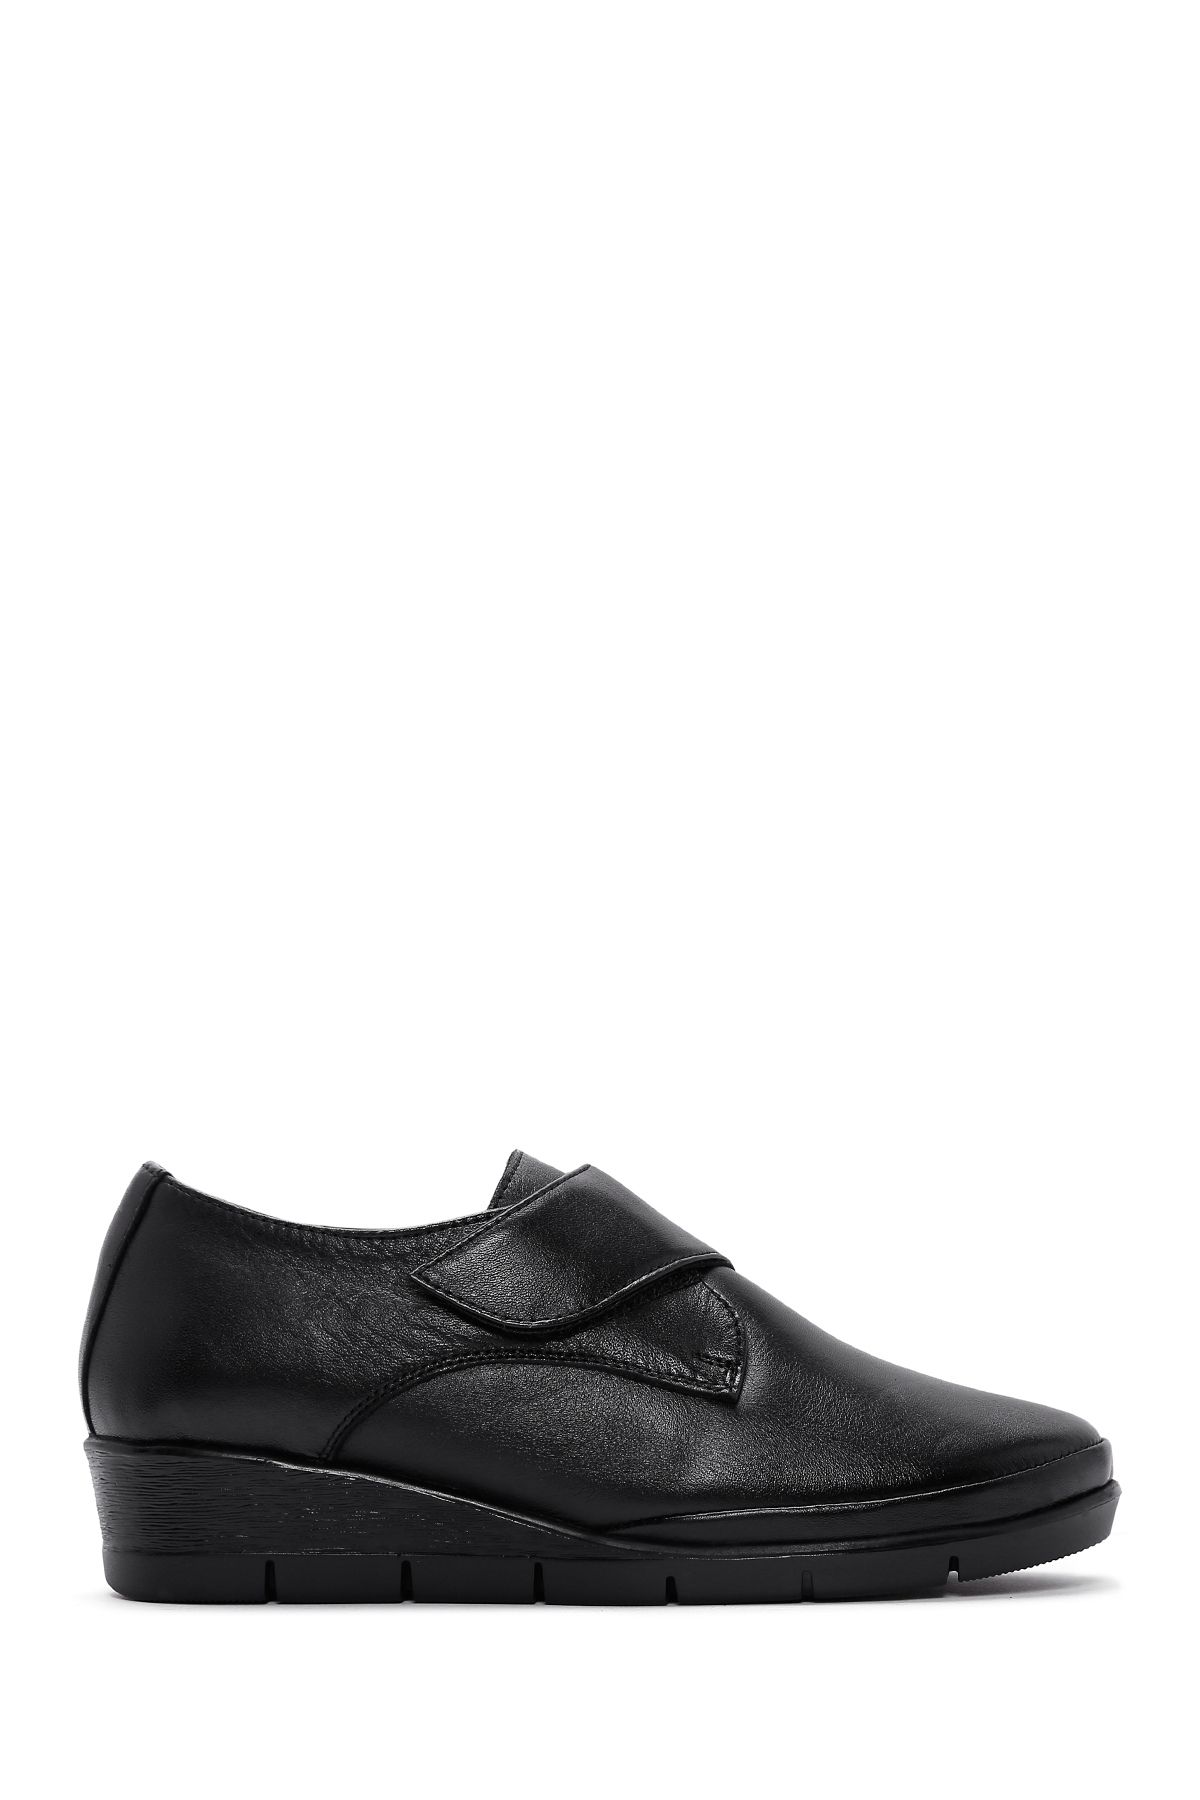 Derimod Kadın Siyah Deri Dolgu Topuklu Comfort Ayakkabı 23wfd236618